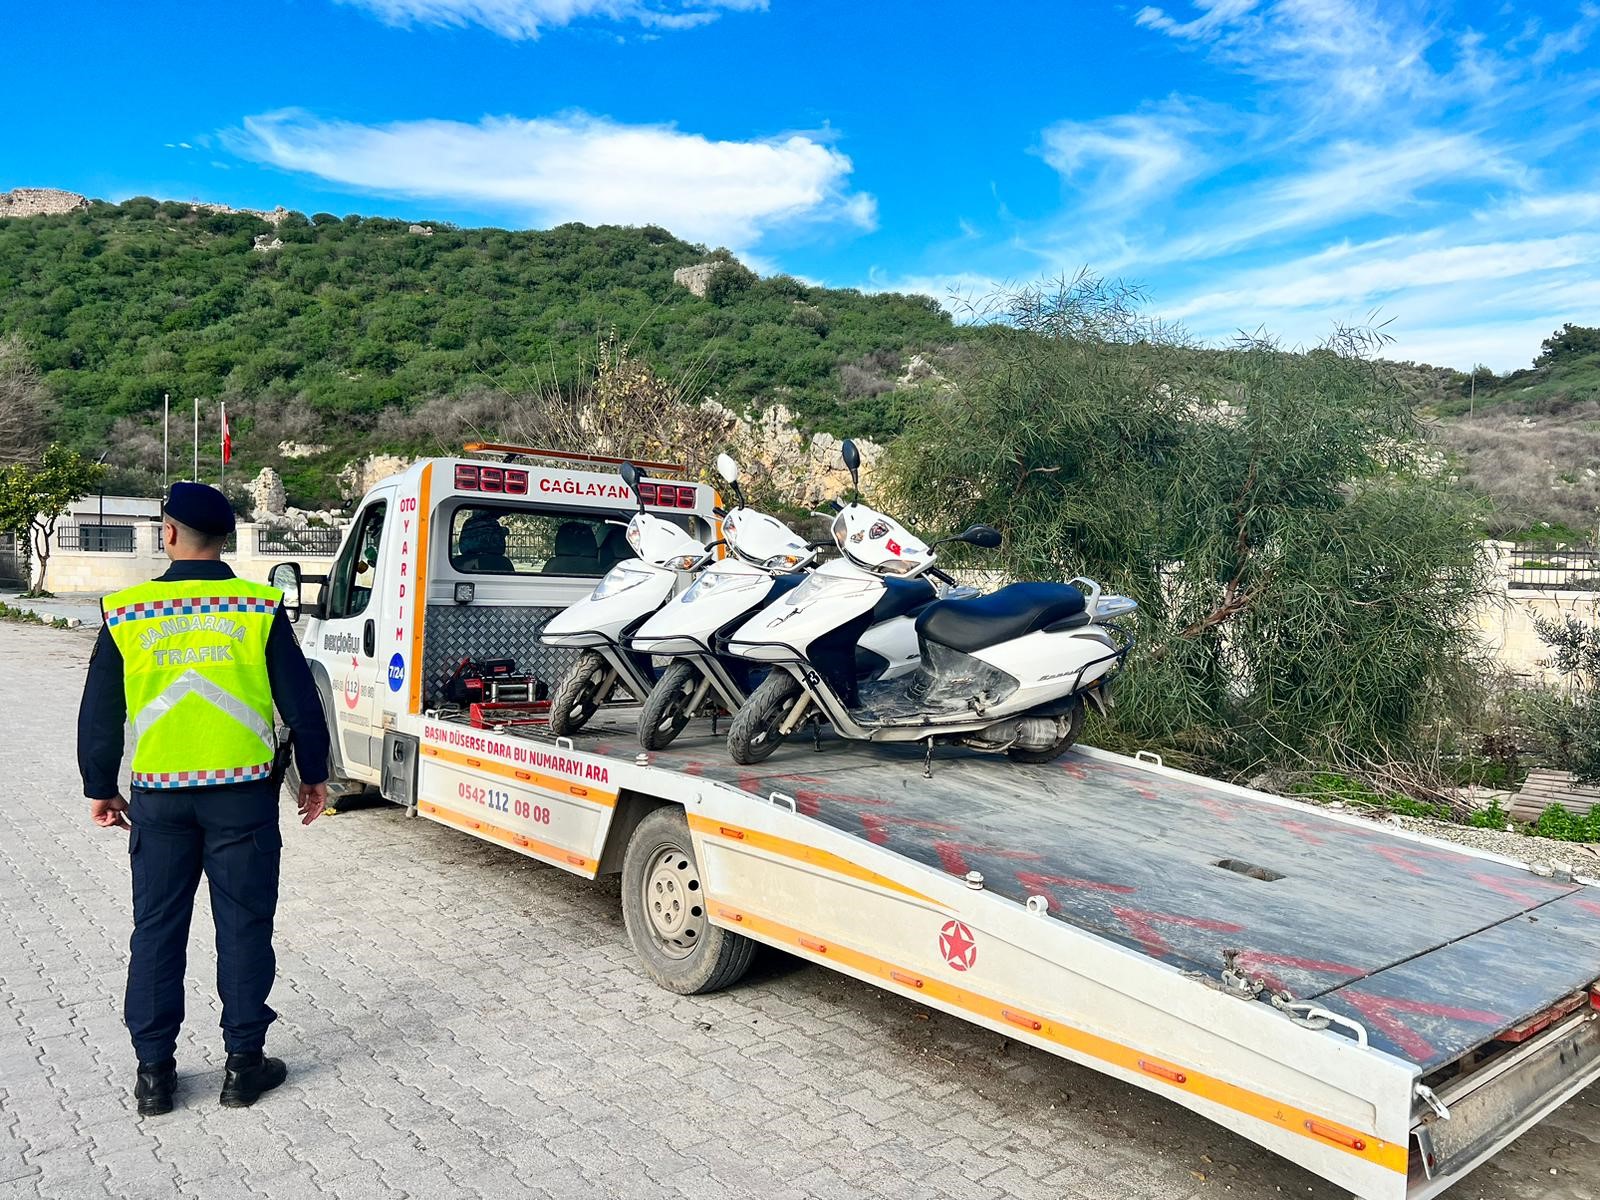 Antalya’da yüzlerce motosiklet sürücüsüne ceza kesildi